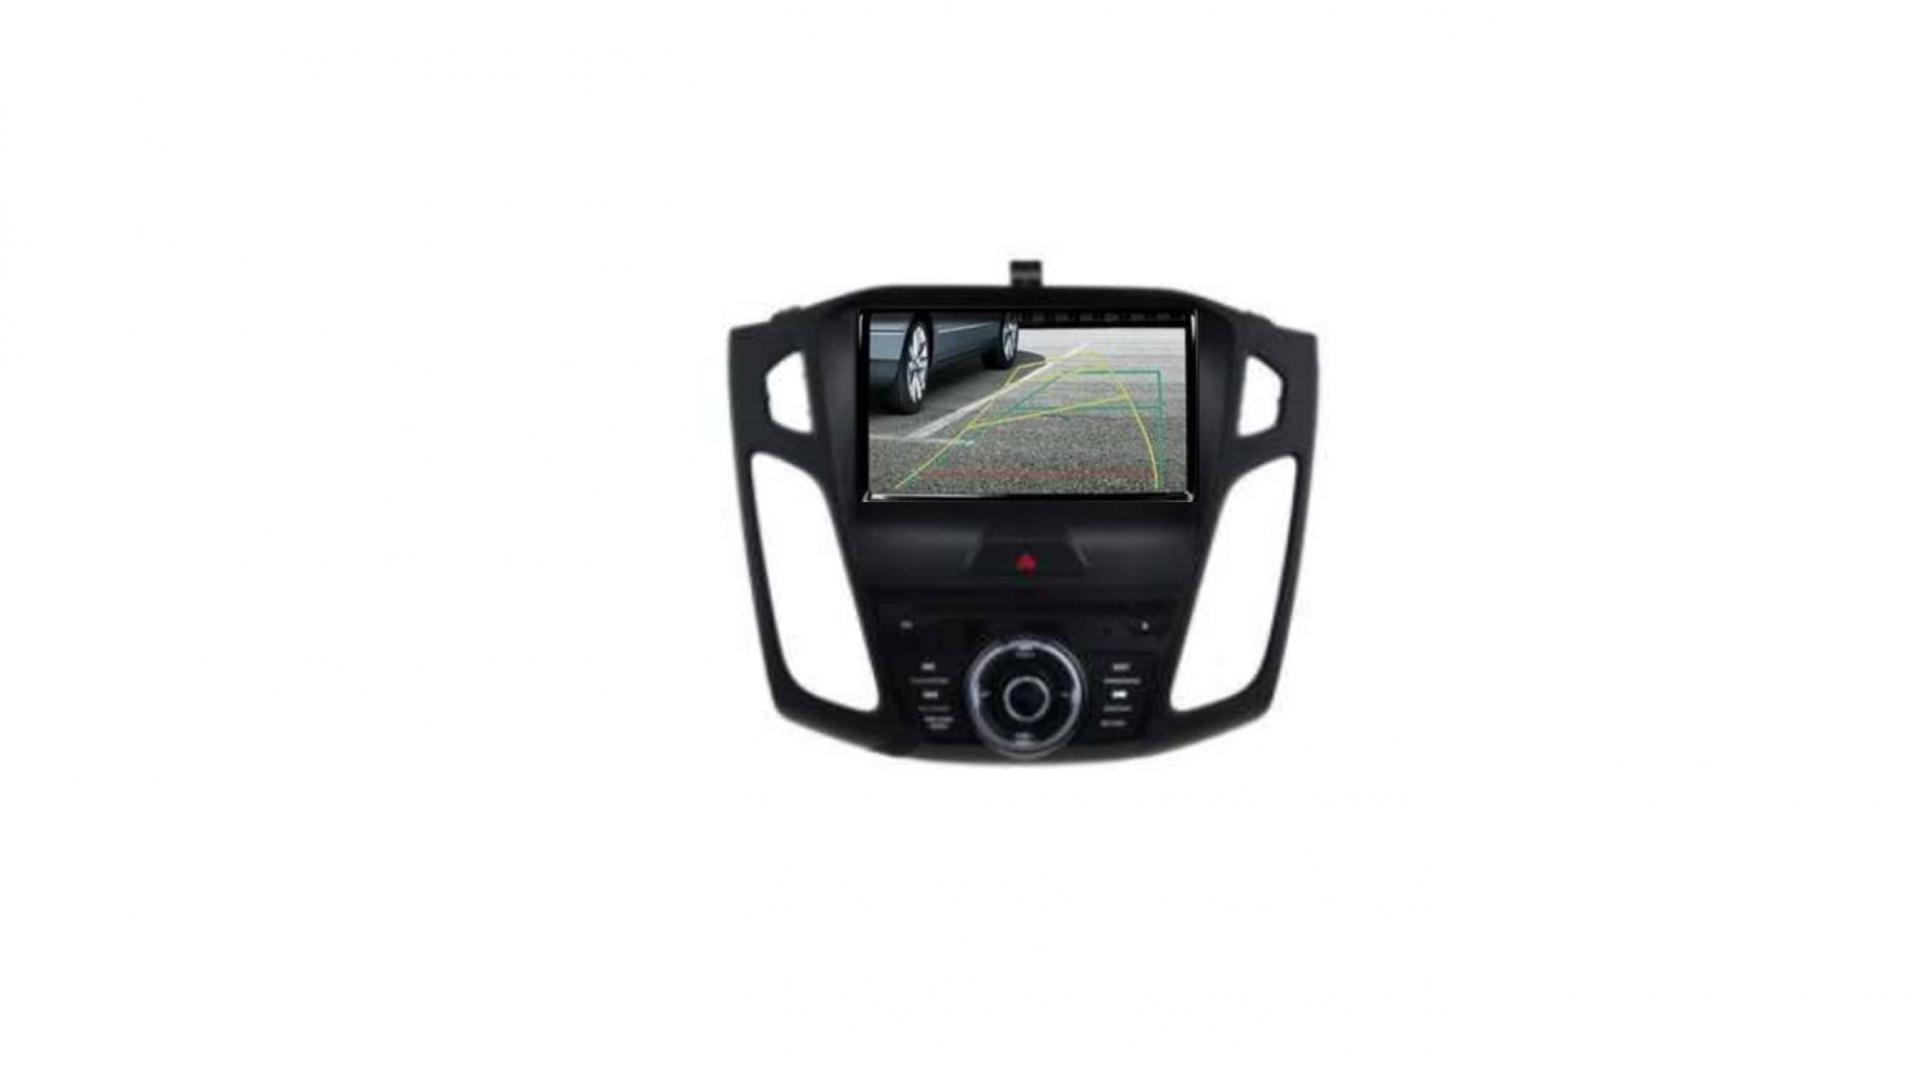 Autoradio androi d auto carplay gps bluetooth ford focus a partir de 2015 2